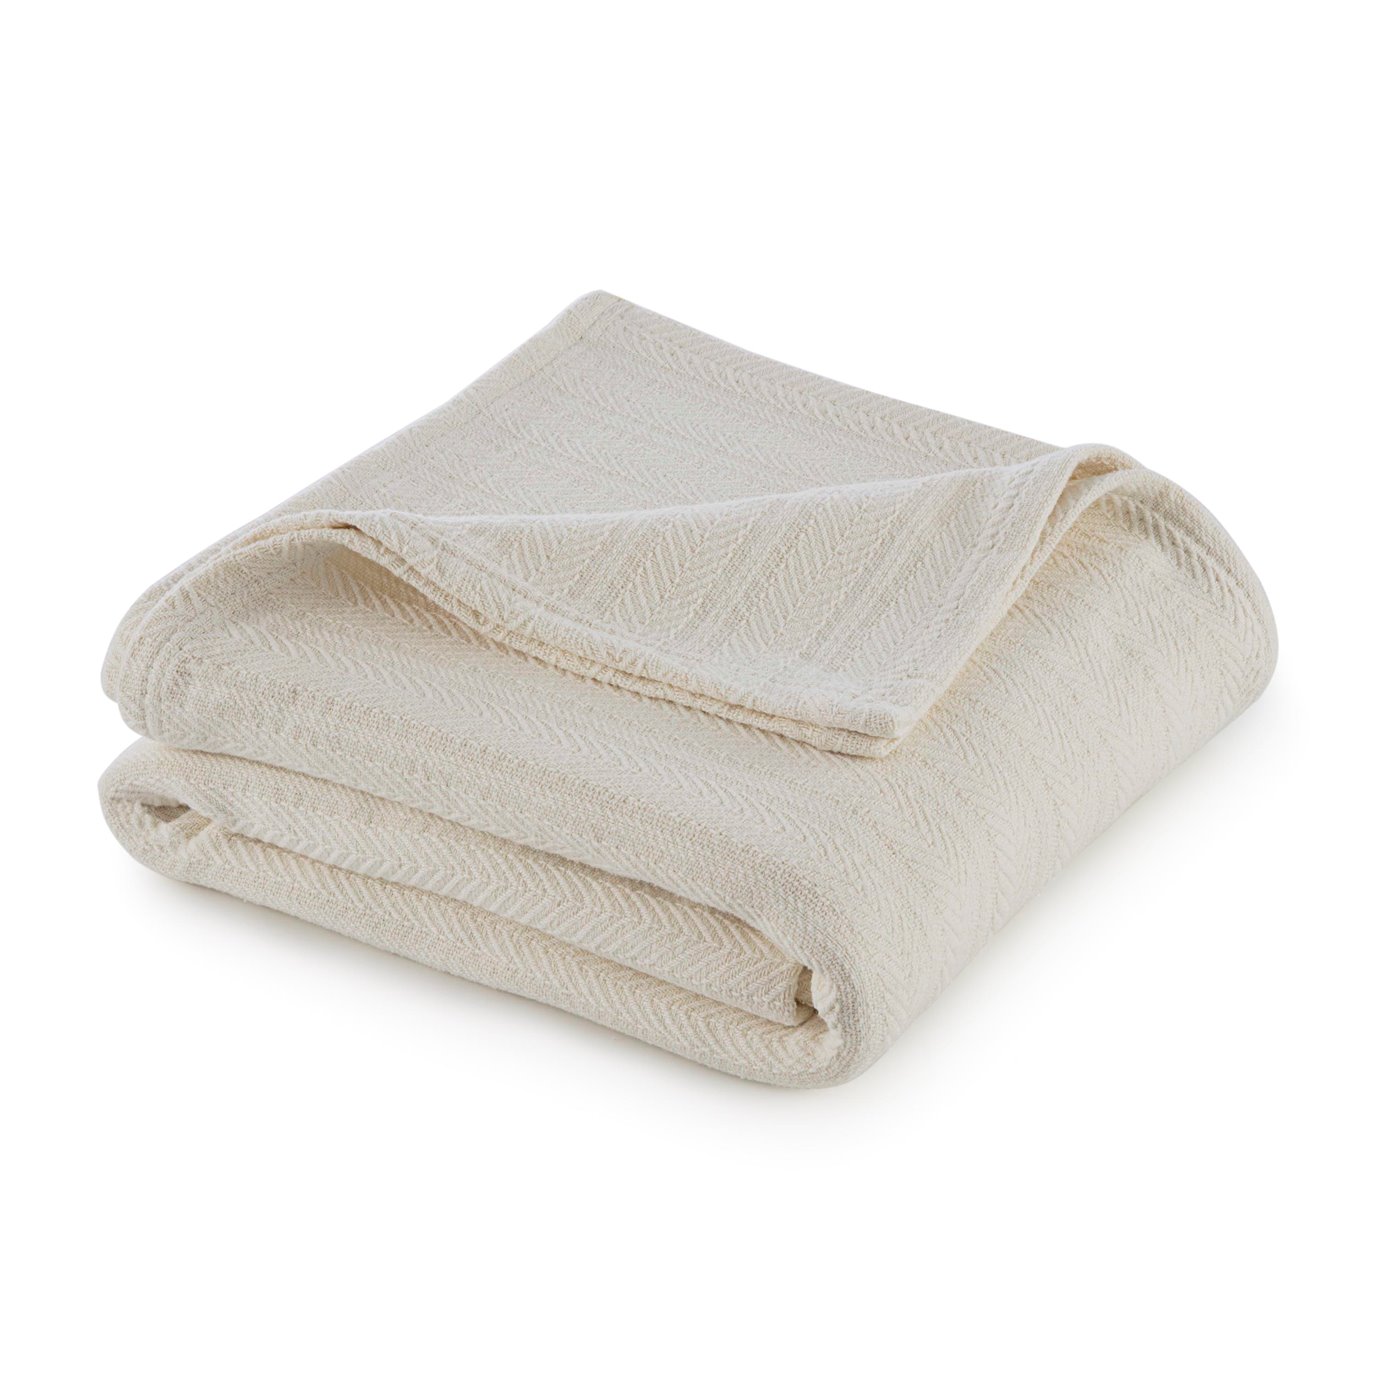 Vellux Cotton Full/Queen Ecru Blanket